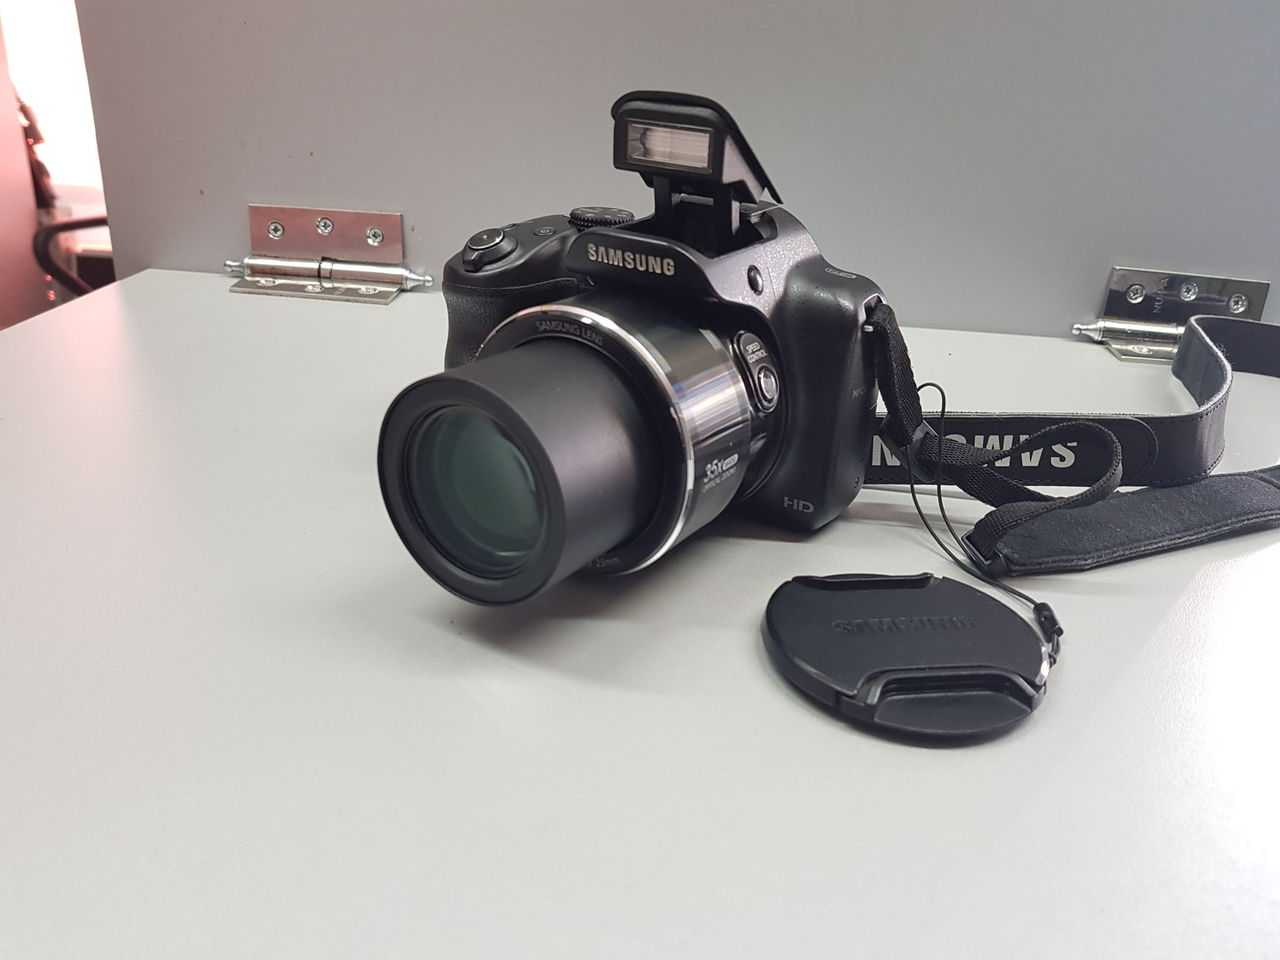 Цифровой фотоаппарат Samsung WB1100F - подробные характеристики обзоры видео фото Цены в интернет-магазинах где можно купить цифровую фотоаппарат Samsung WB1100F